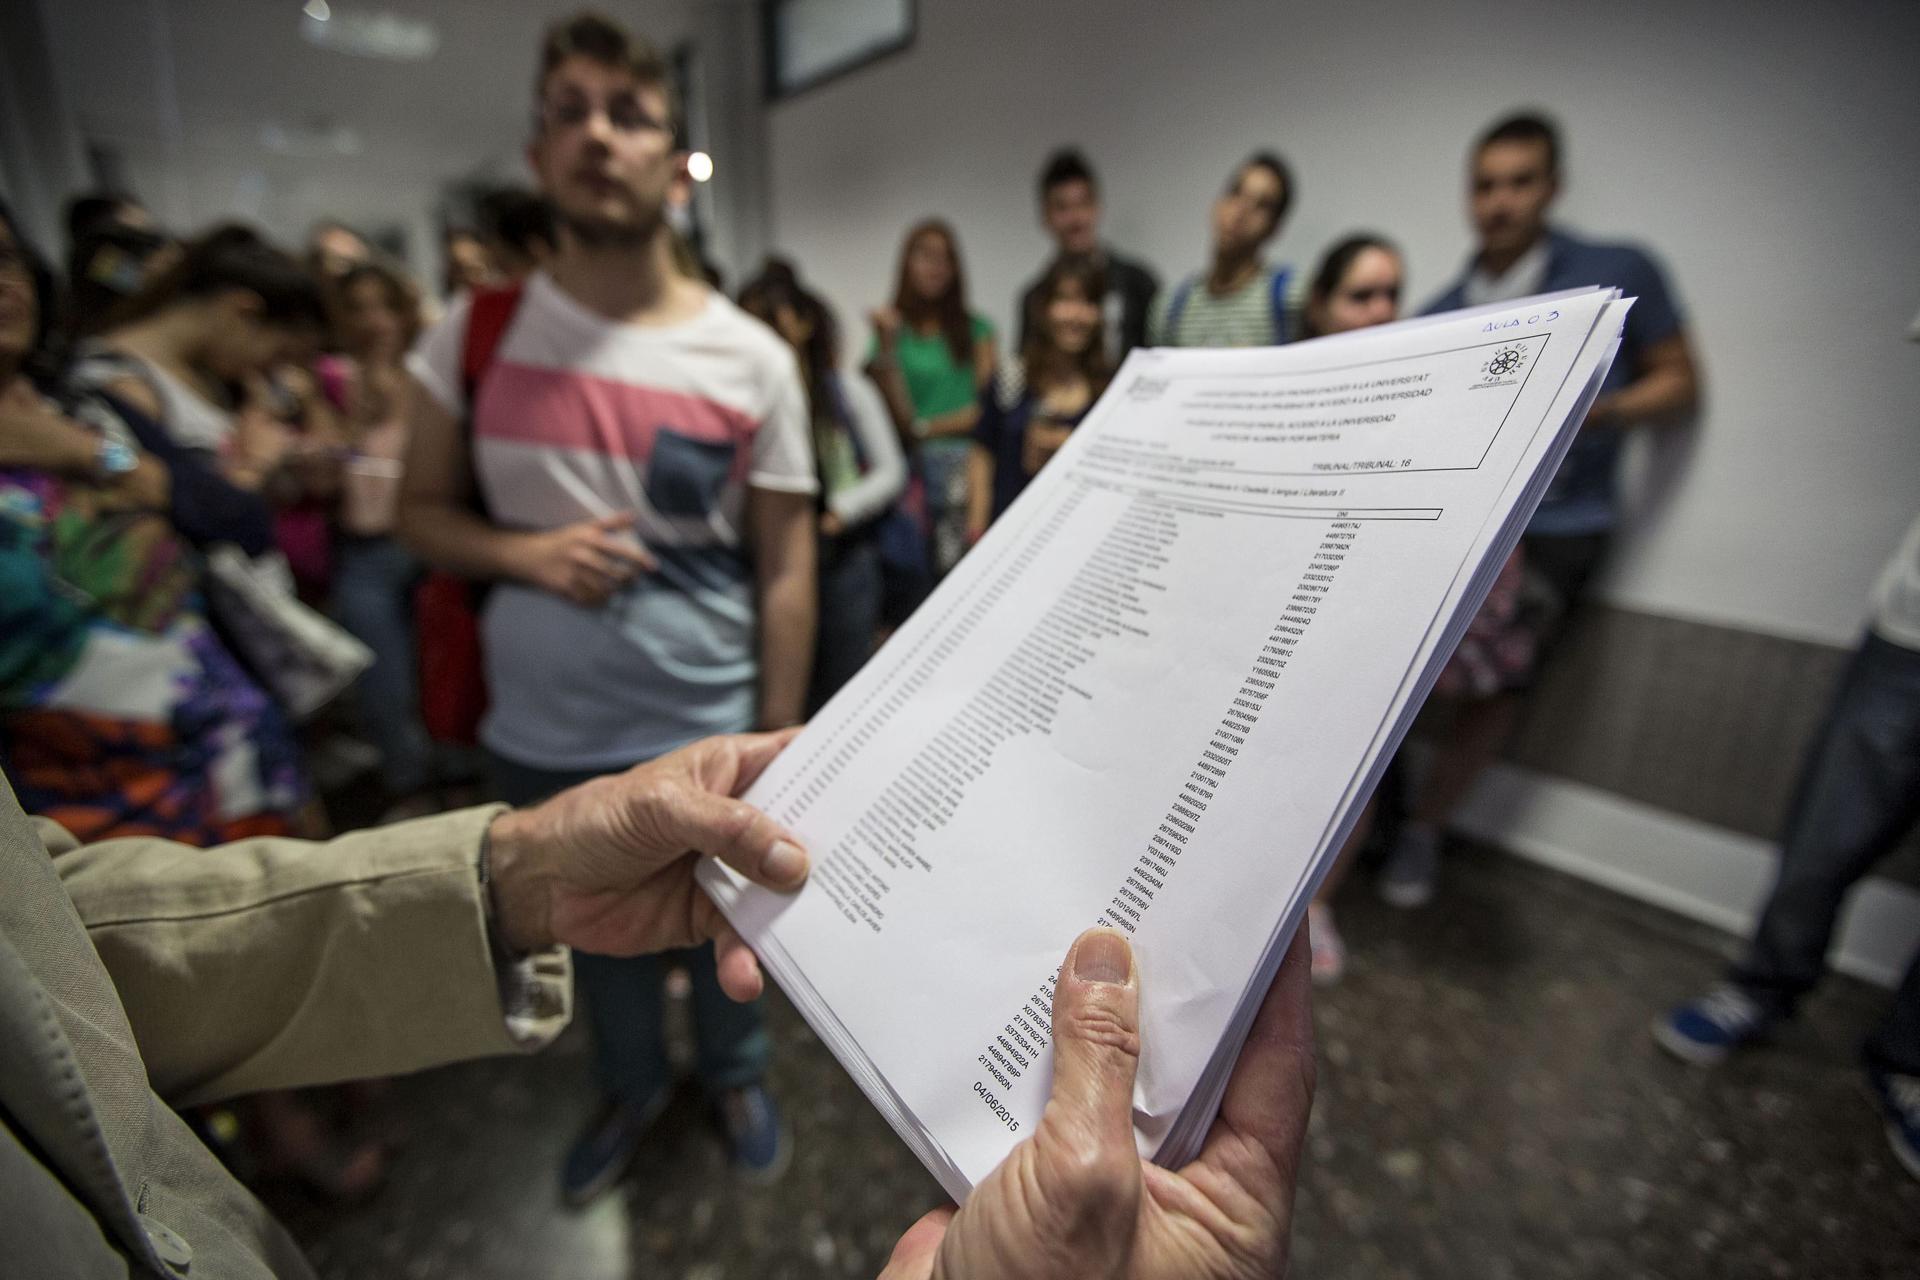 Fechas admisión universidades valencianas públicas